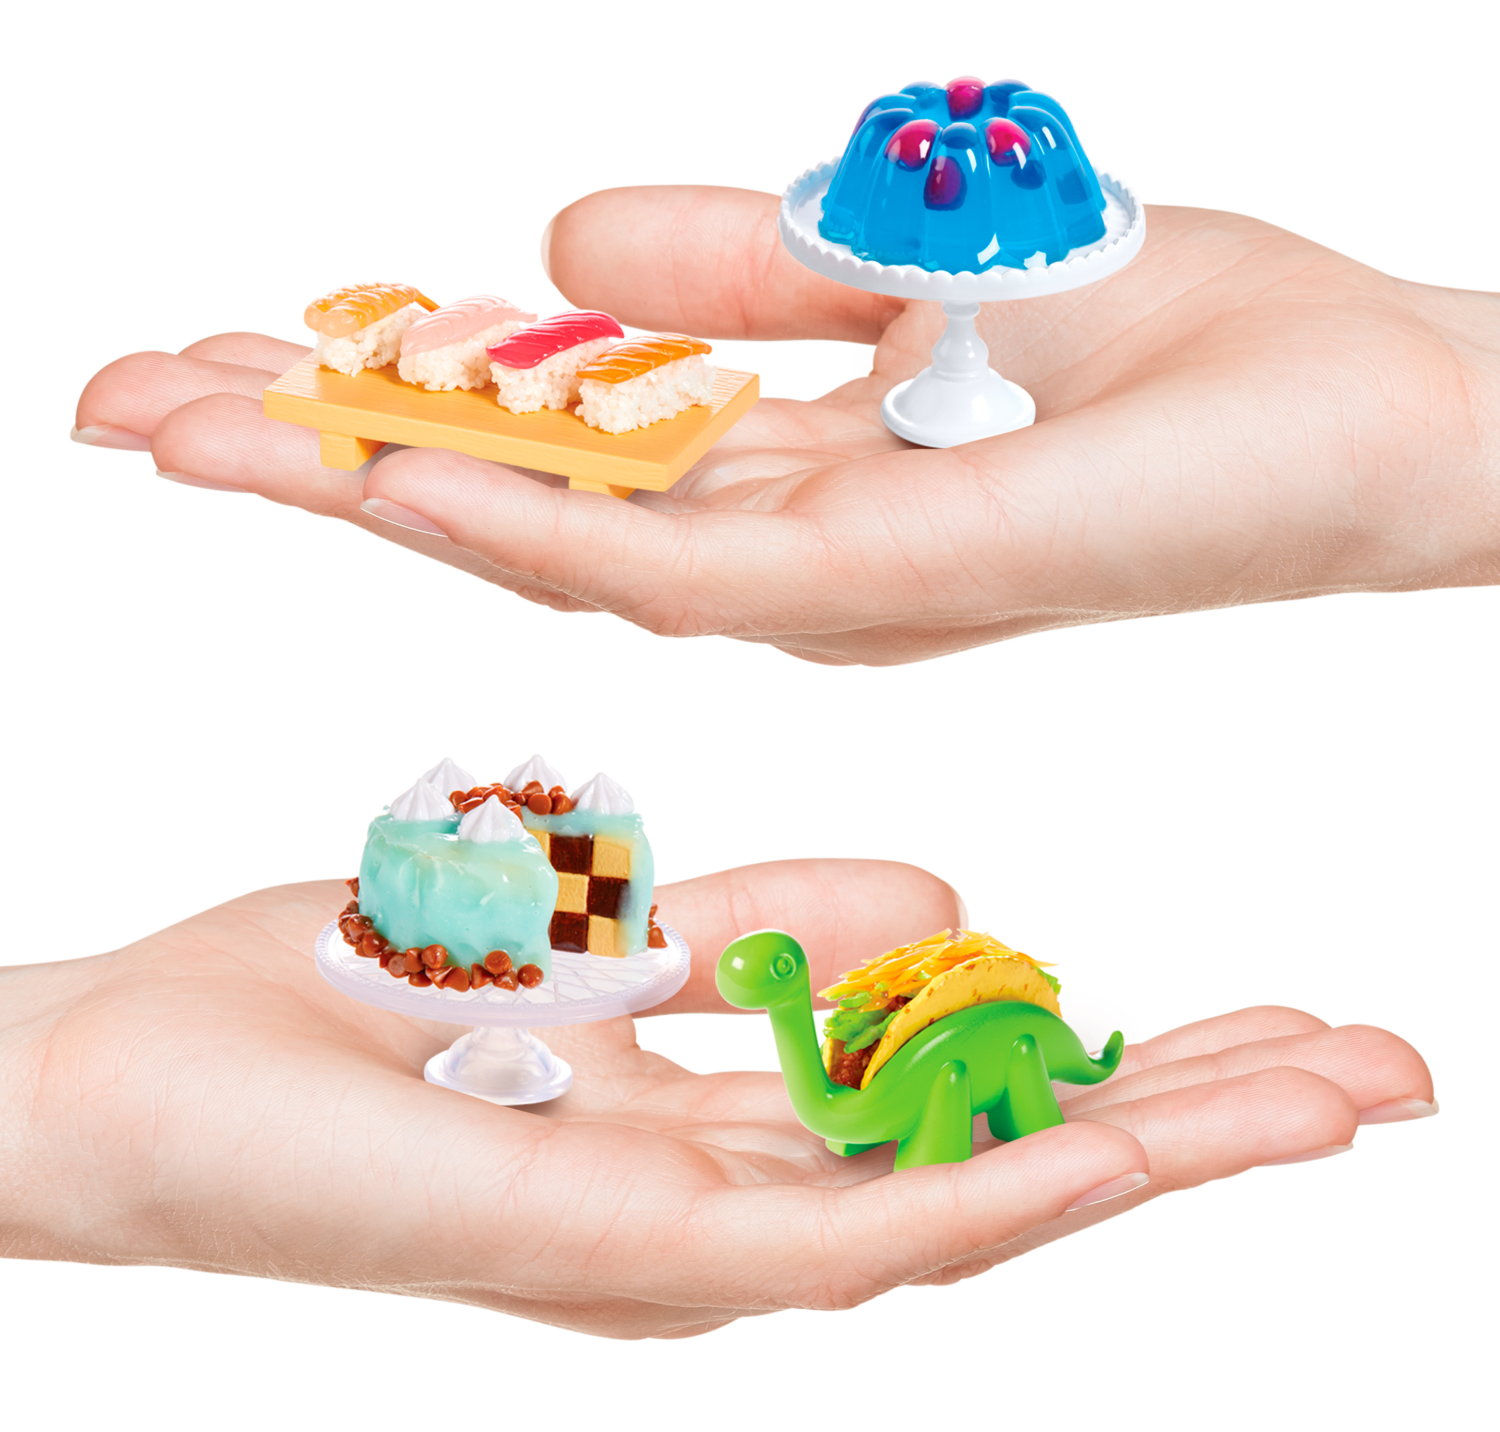 Mga - diner serie 3 - mini oggetti da collezione in una confezione misteriosa - gioco in resina fai-da-te - repliche di cibi, non commestibili - 